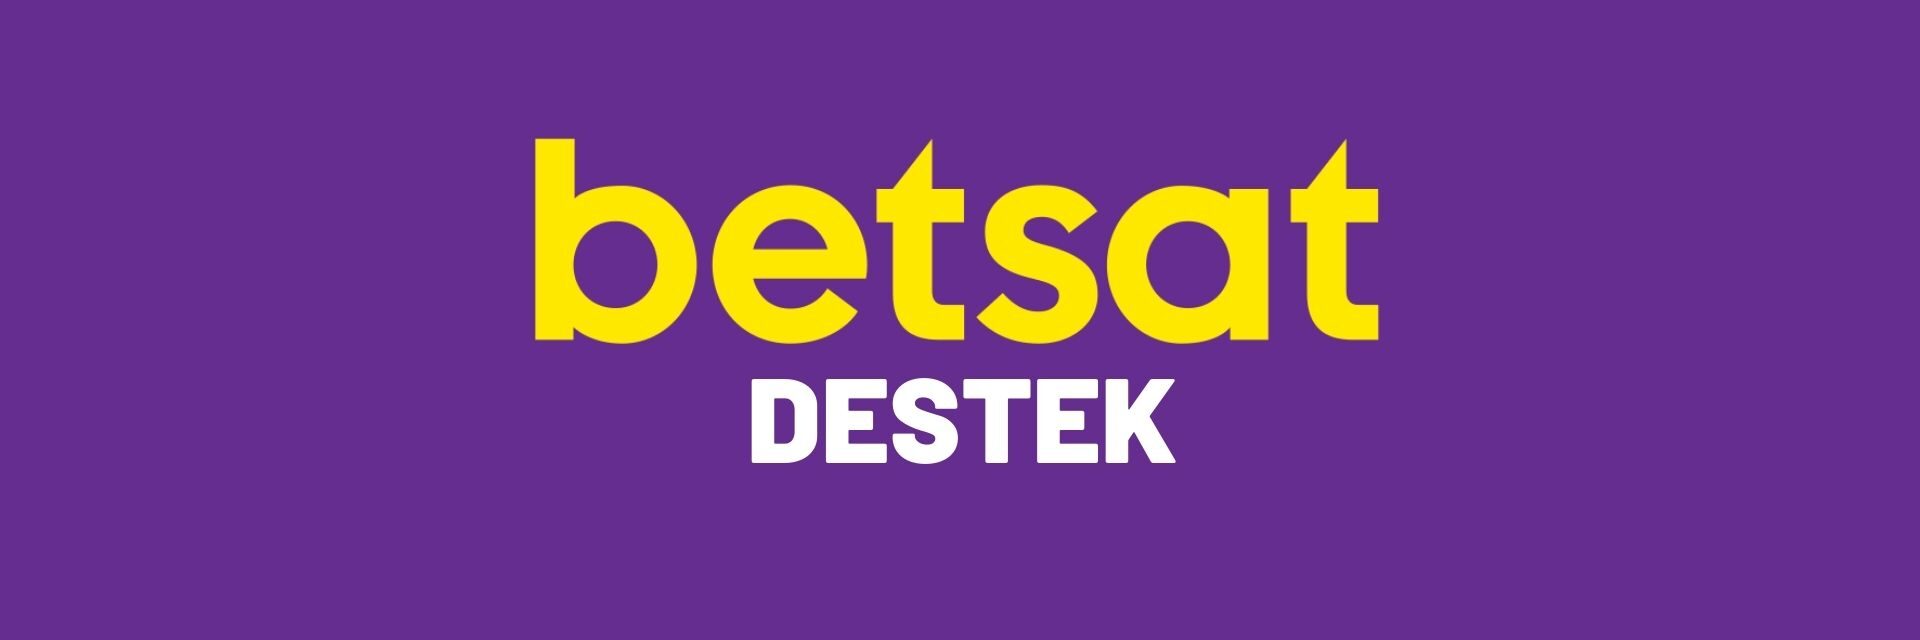 Betsat Destek